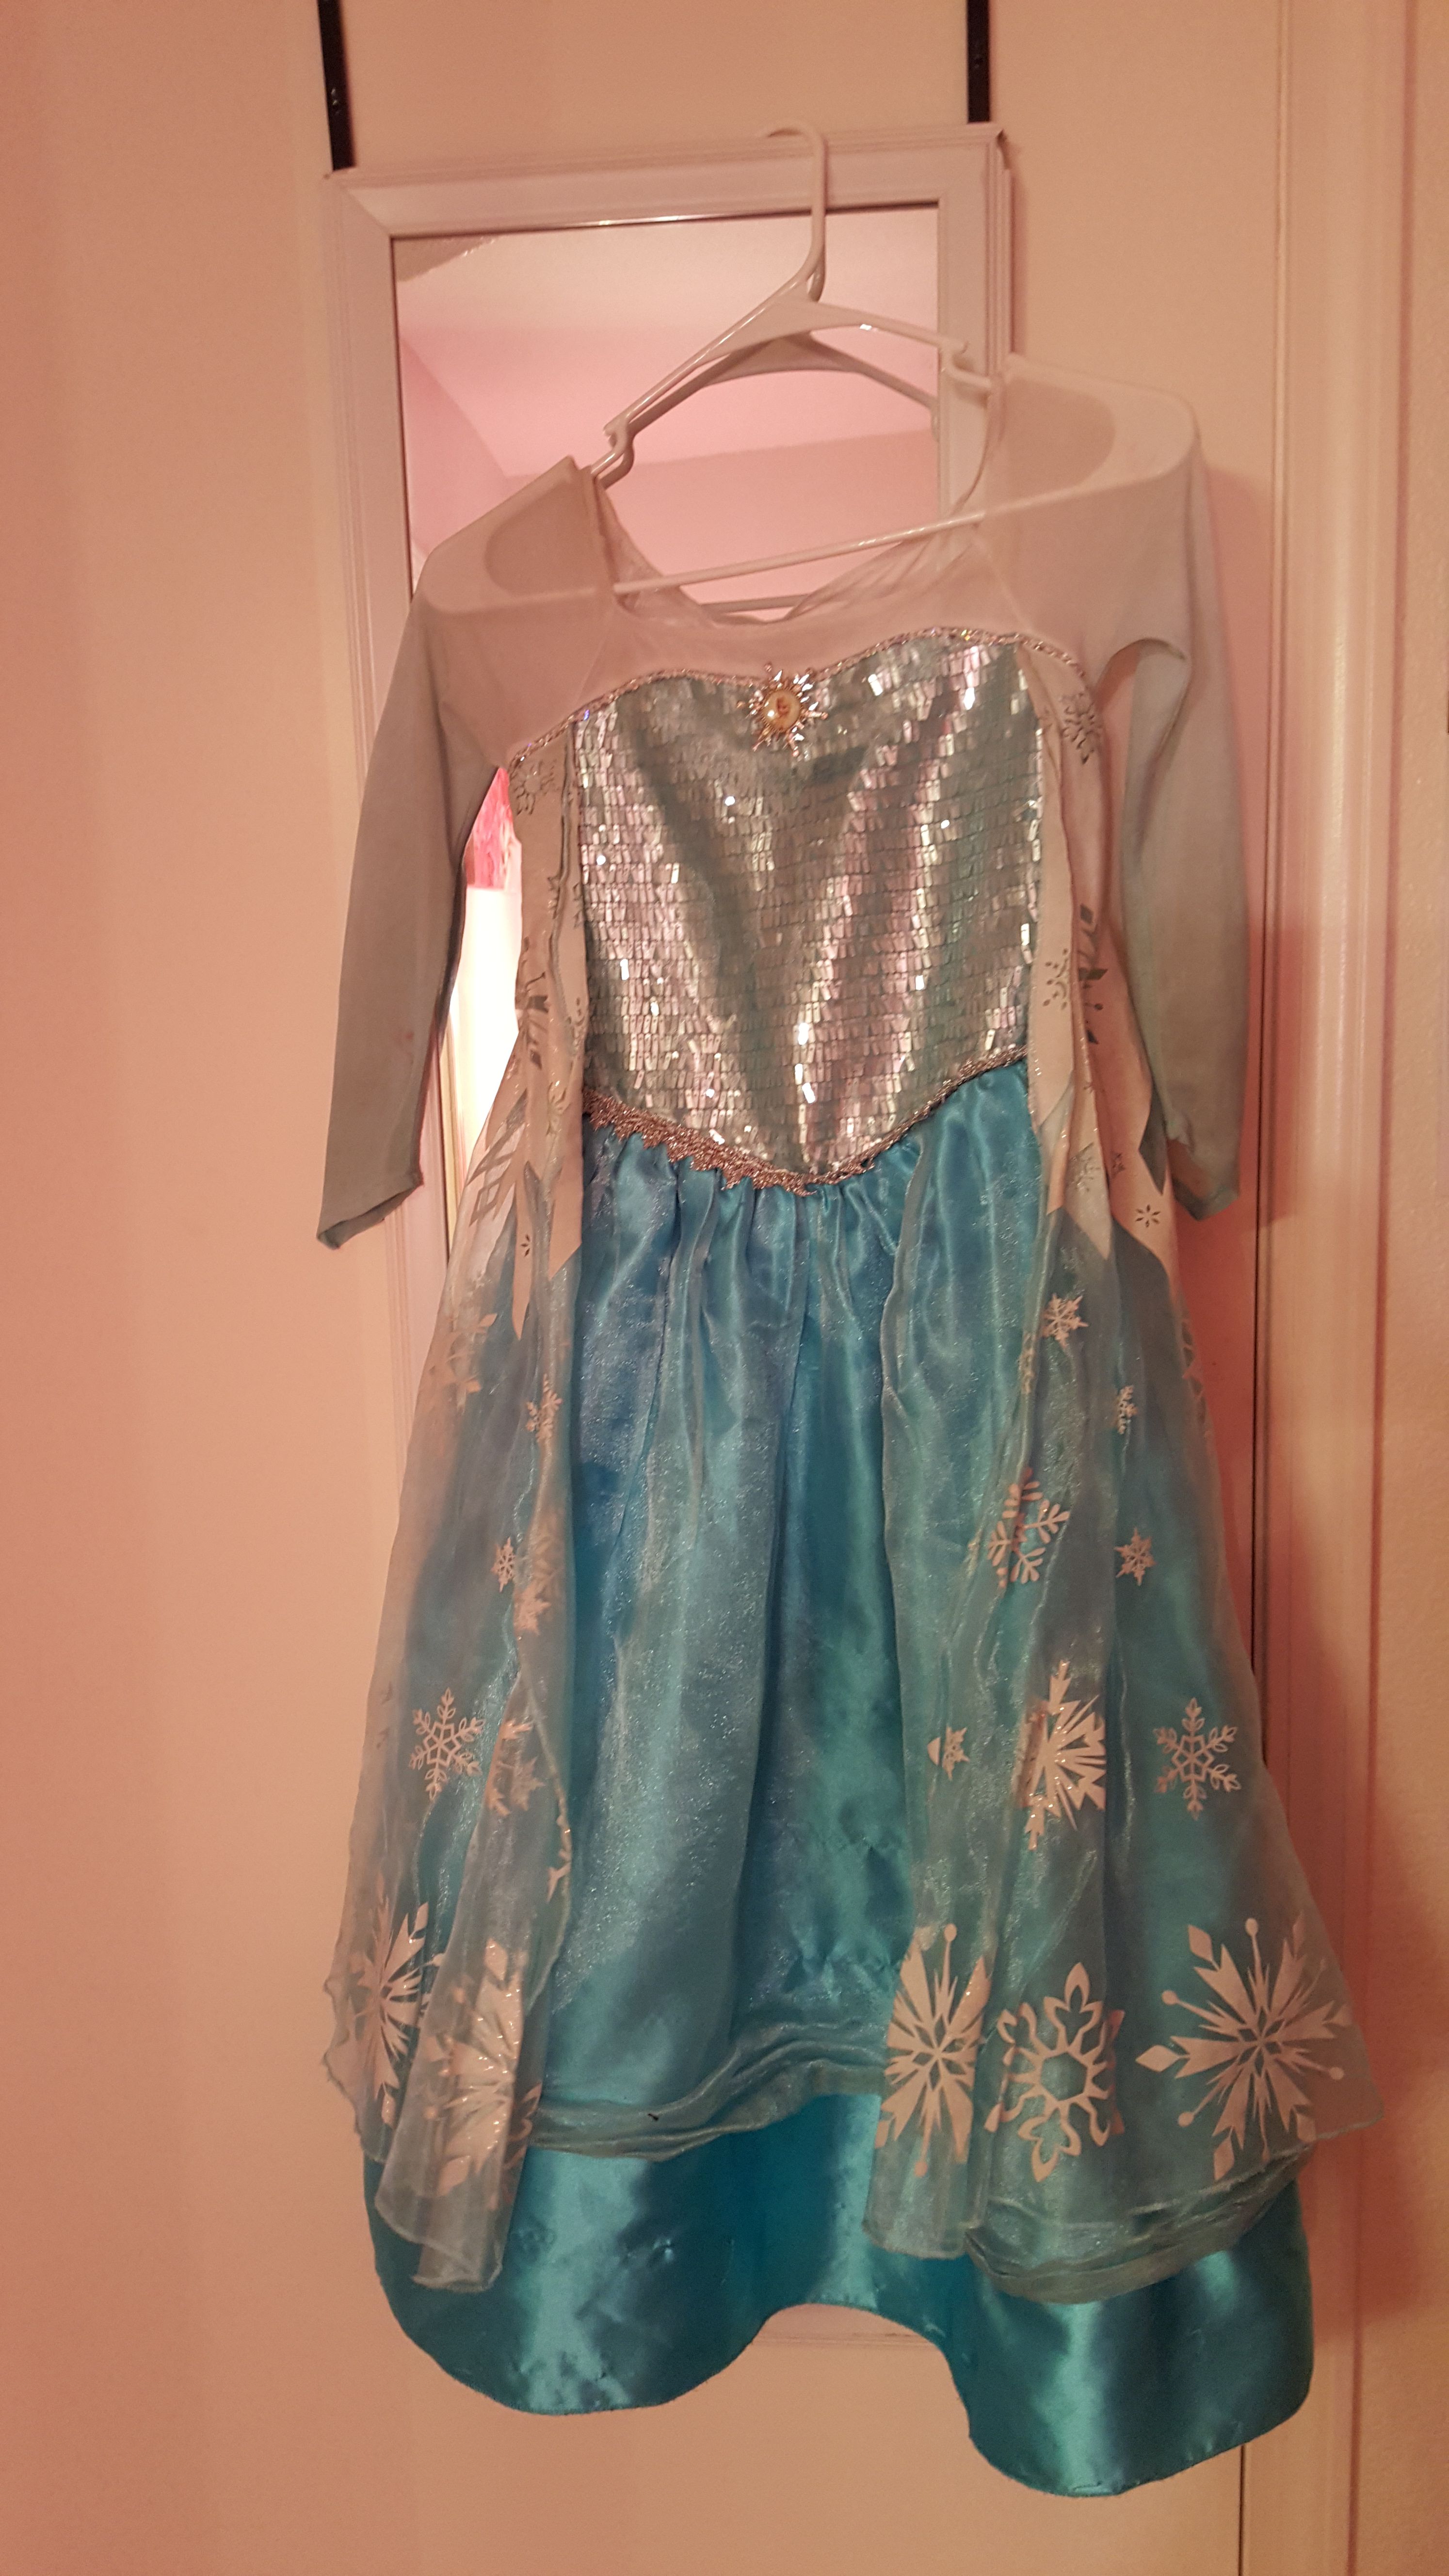 Elsa dress zize 9/10